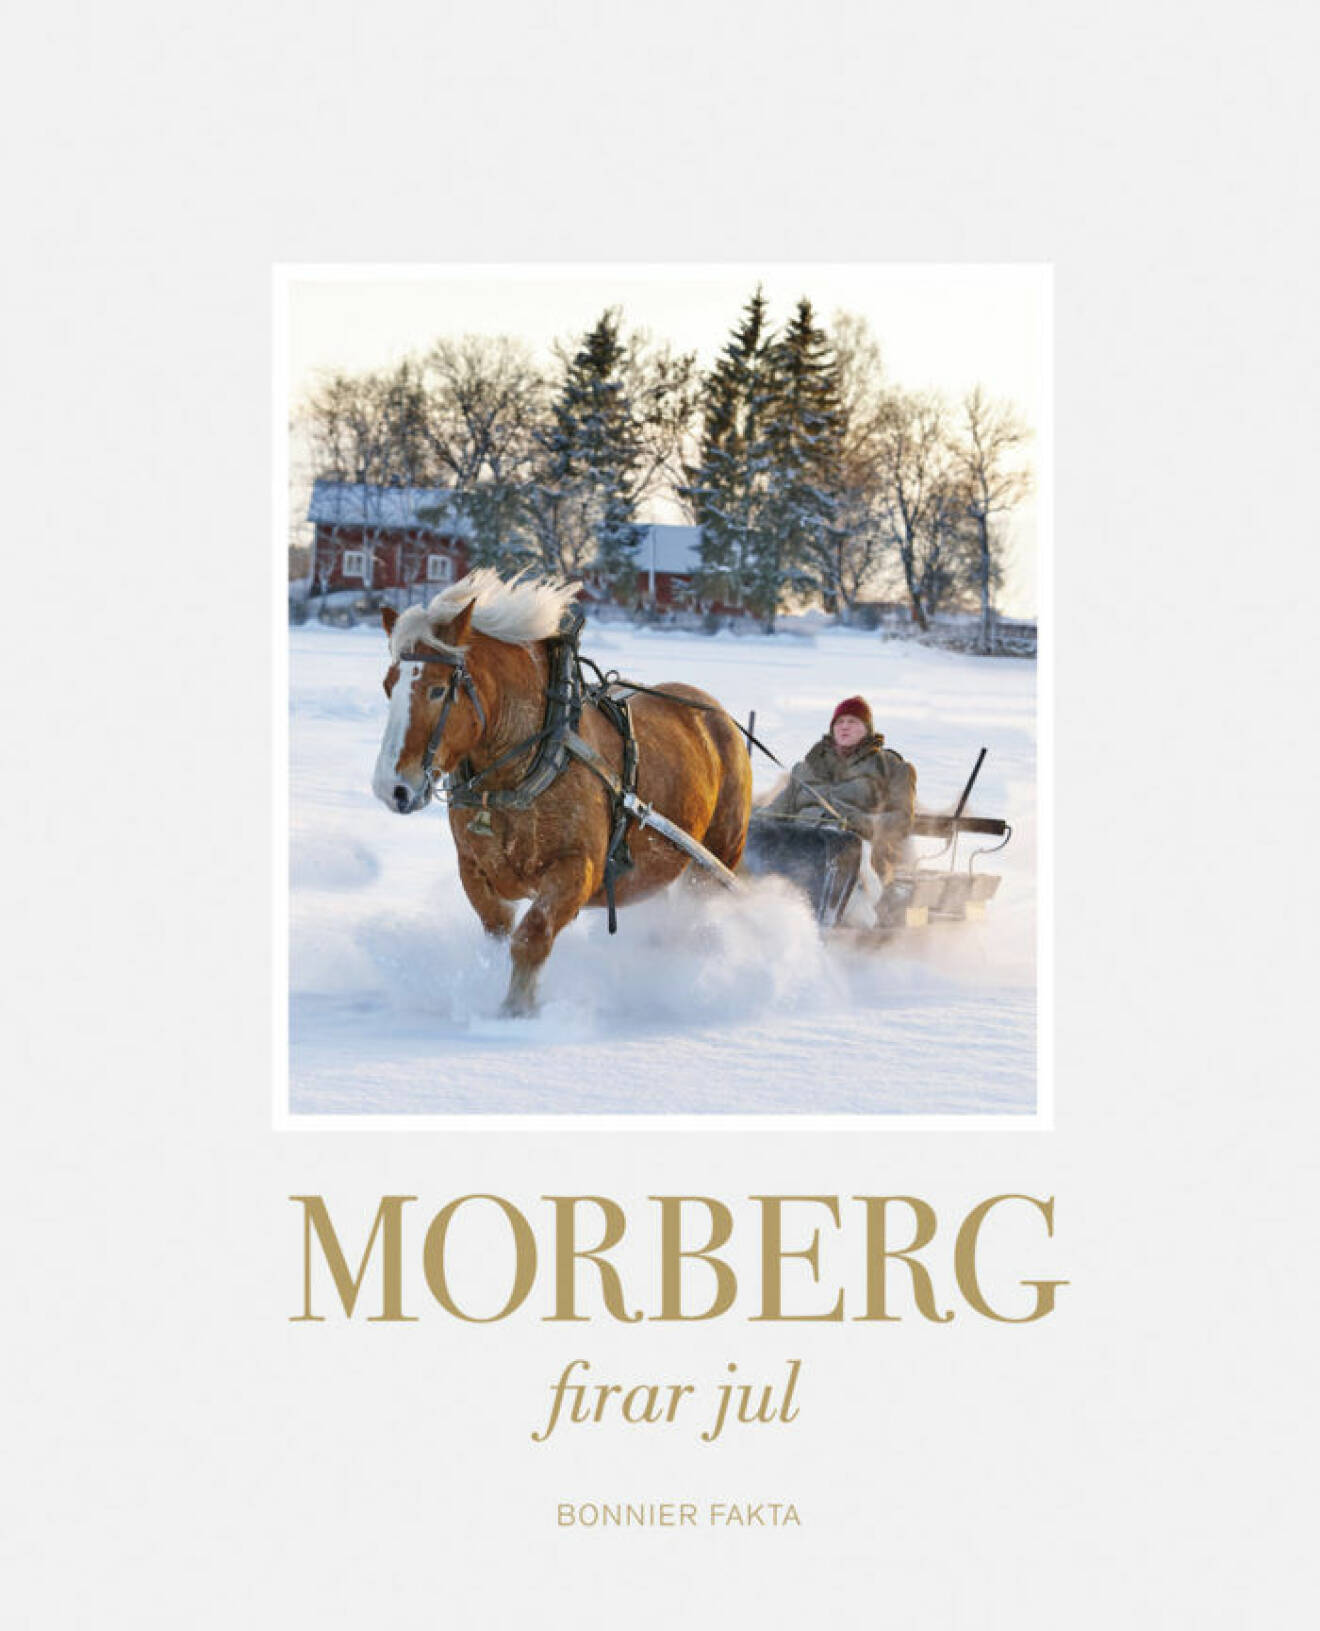 Morberg firar jul (Bonnier Fakta) Här hittar du julsalladen som vi bjuder på här!